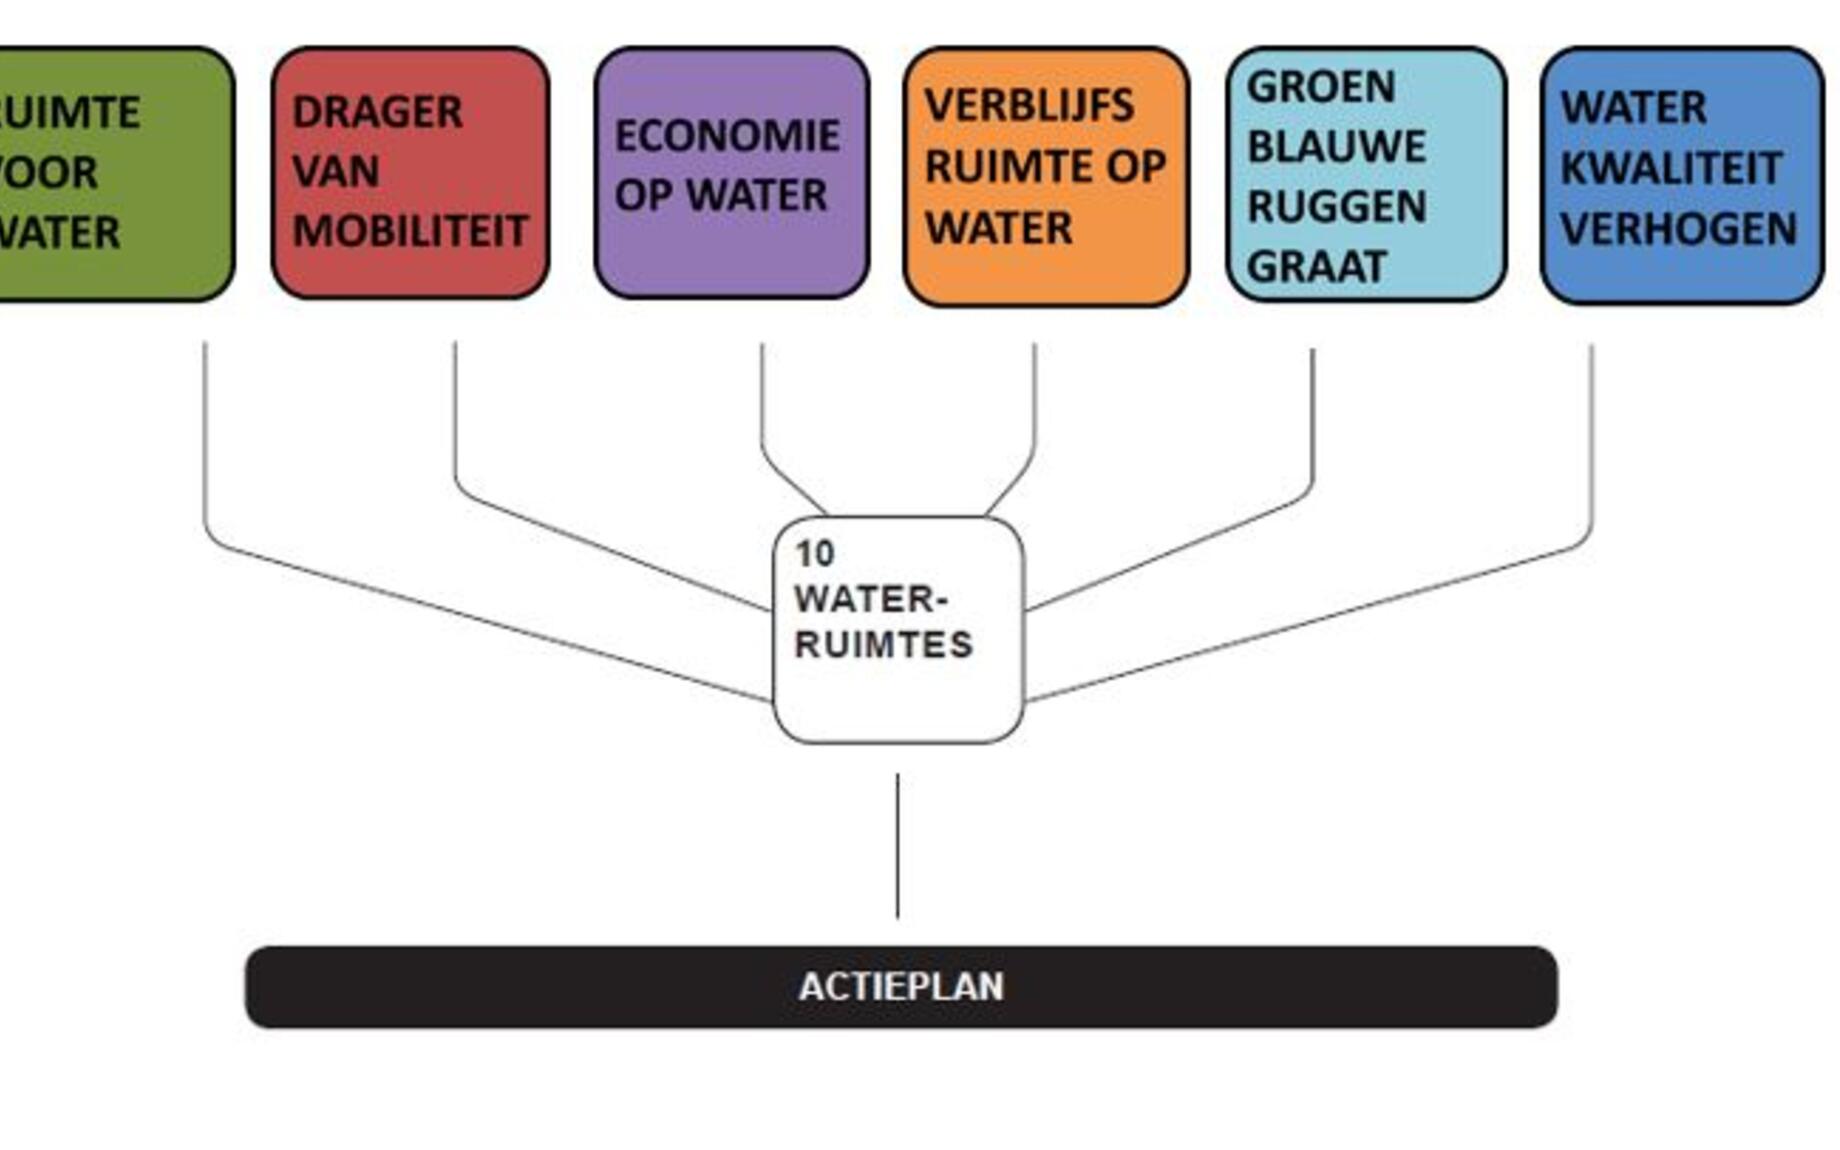 6 ambities voor Water in de stad Gent